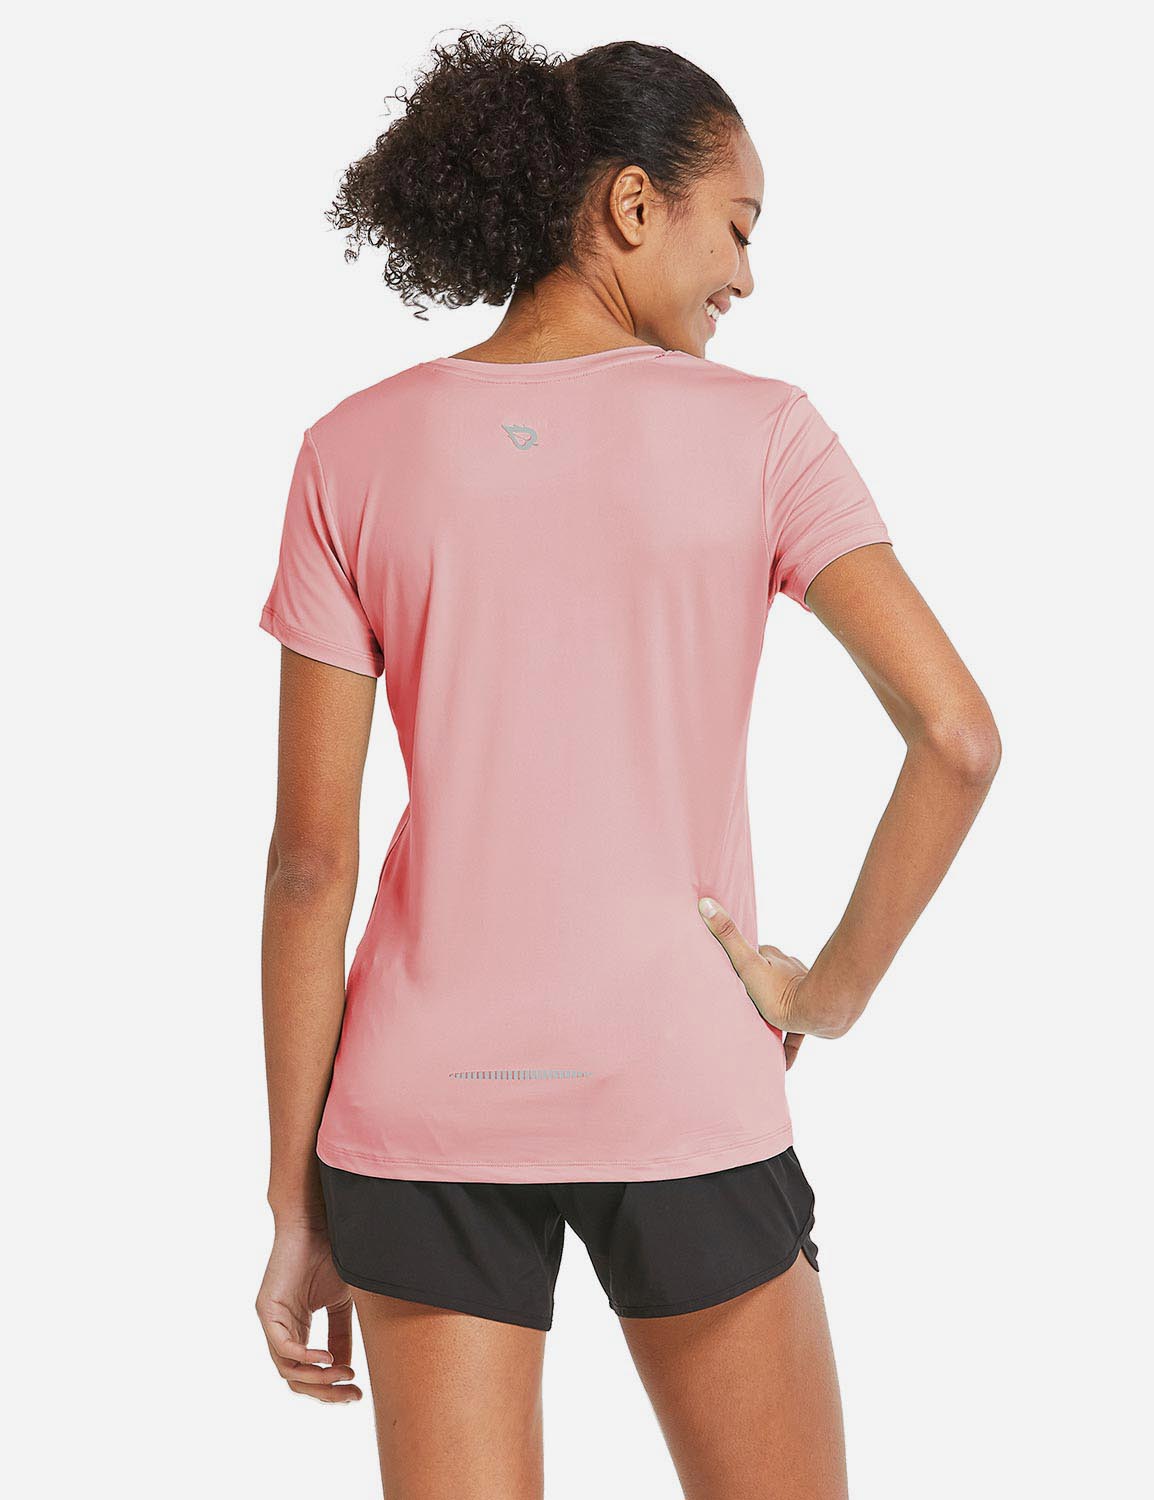 Baleaf Women's Baleaf Crew neck Comfort Fit Workout T-Shirt abd349 Pink Back